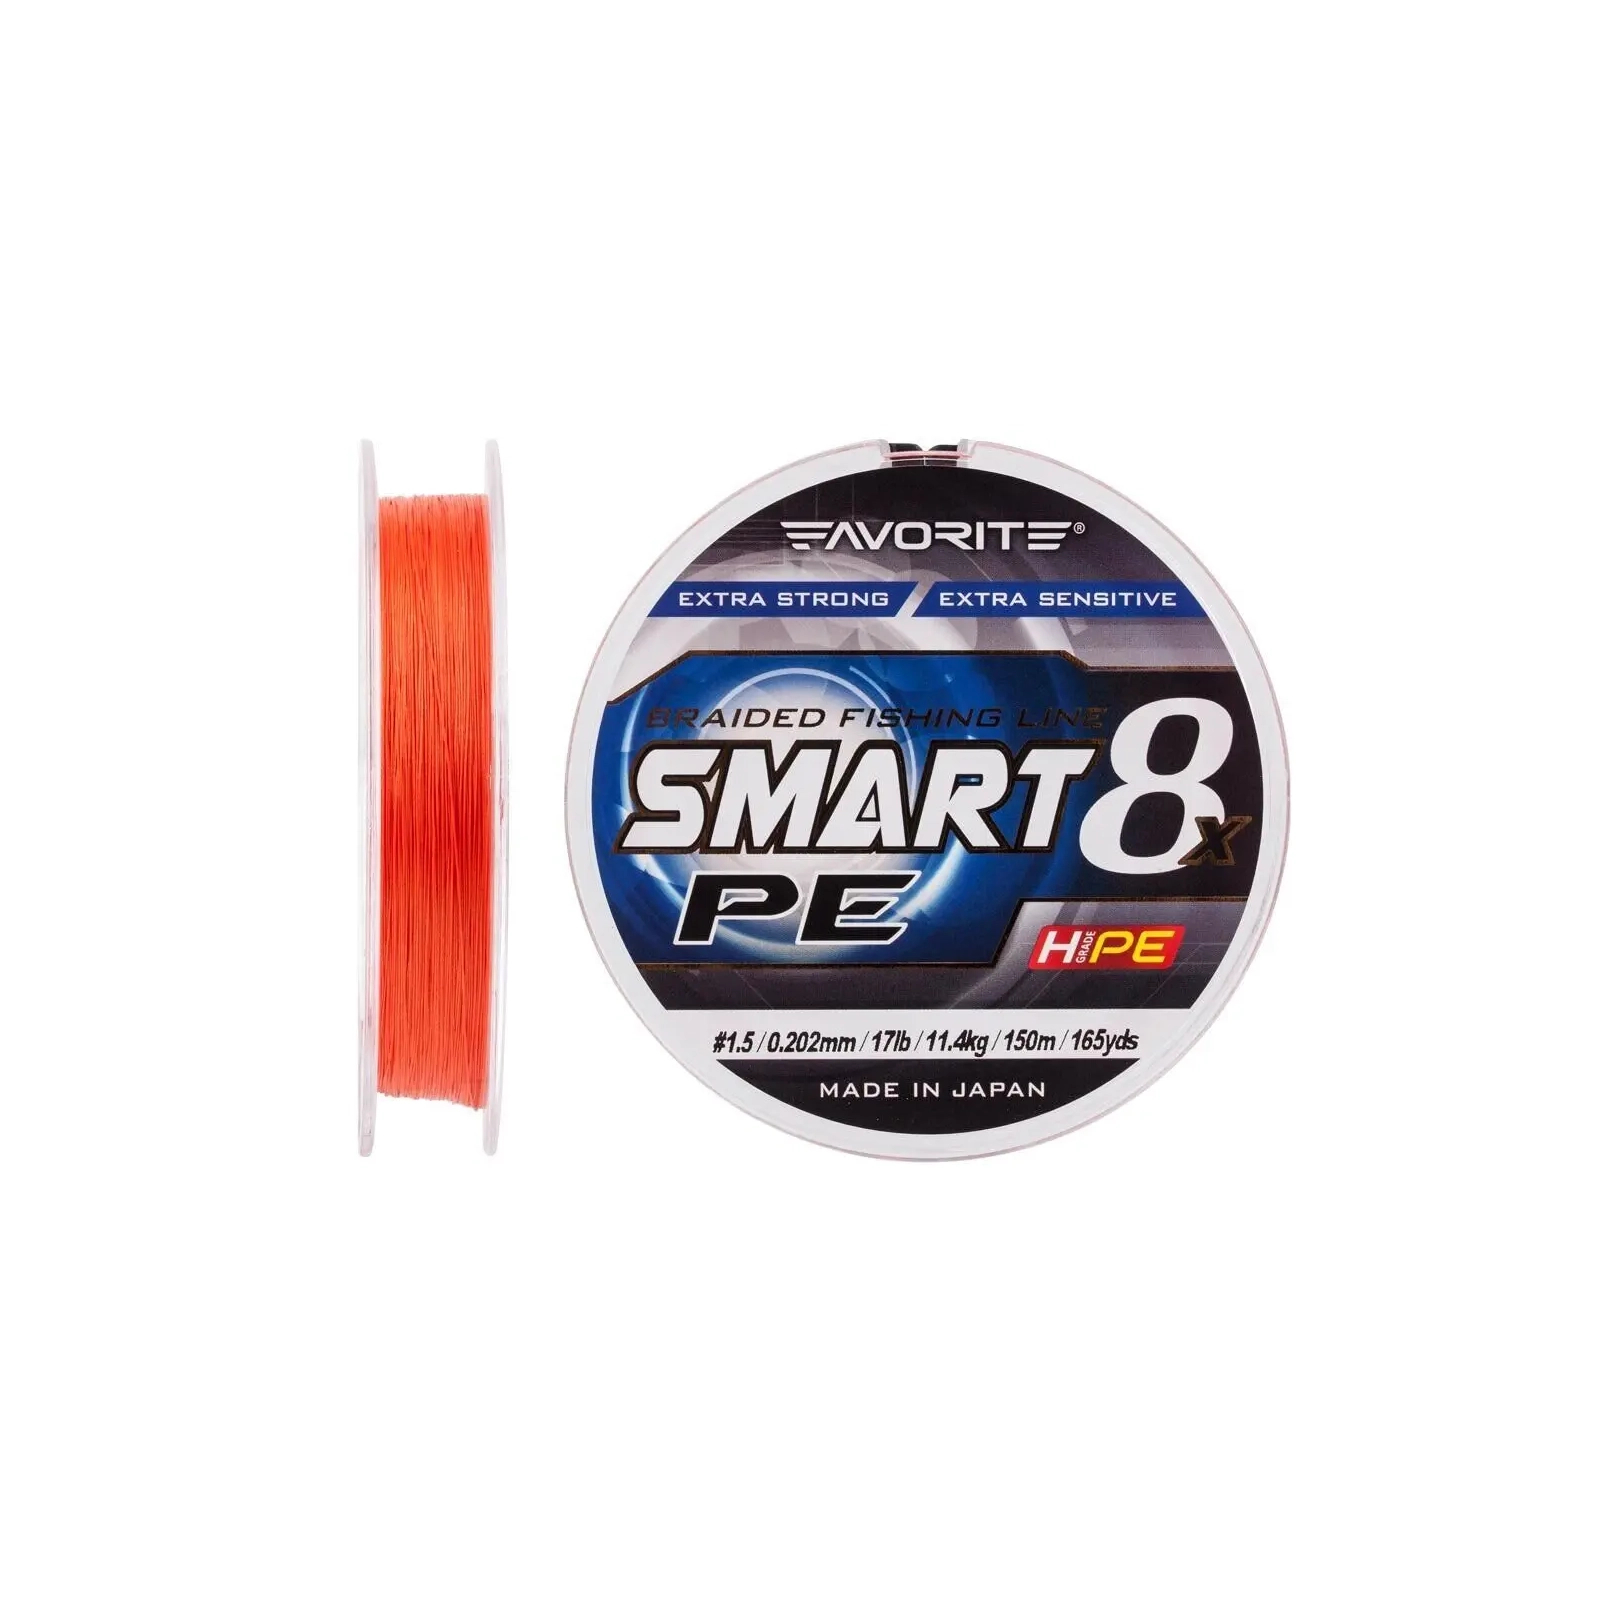 Шнур Favorite Smart PE 8x 150м 1.5/0.202mm 17lb/11.4kg Red Orange (1693.10.84) зображення 2